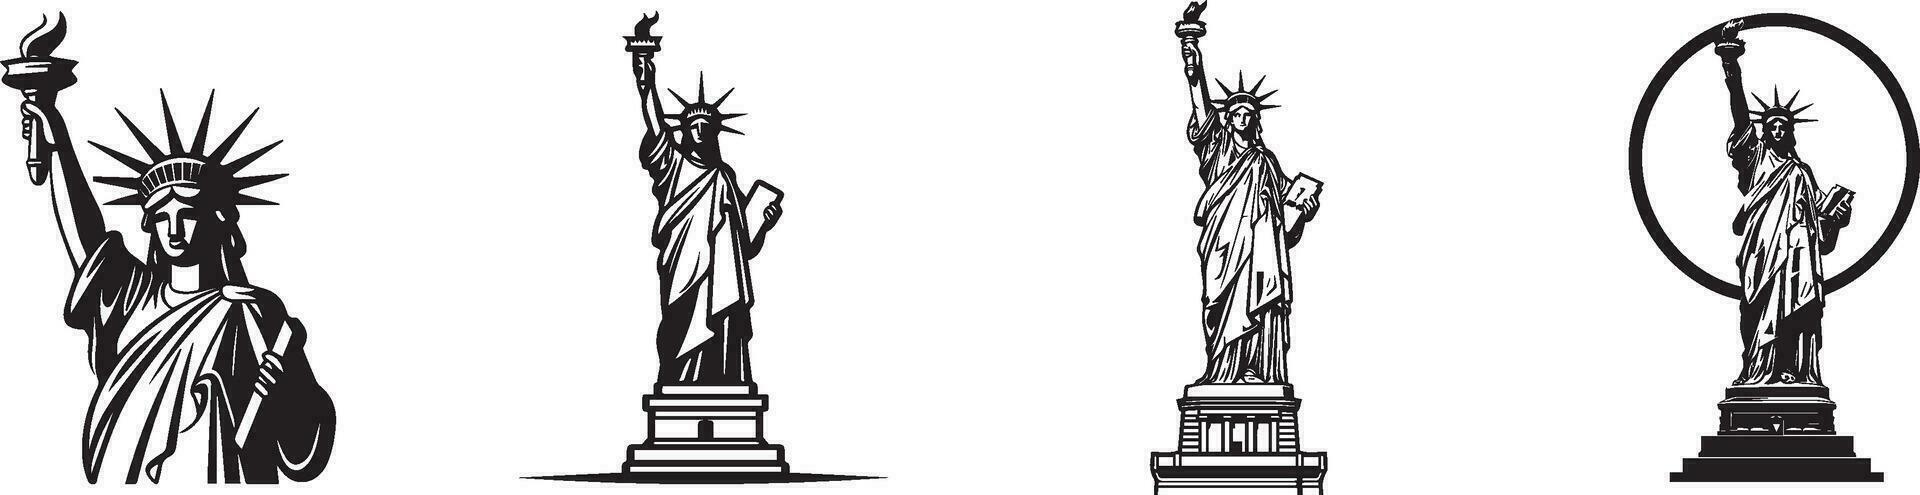 Etats-Unis ou le uni États de Amérique indépendance journée logo pour le 4e de juillet avec statue de liberté, vecteur illustration.